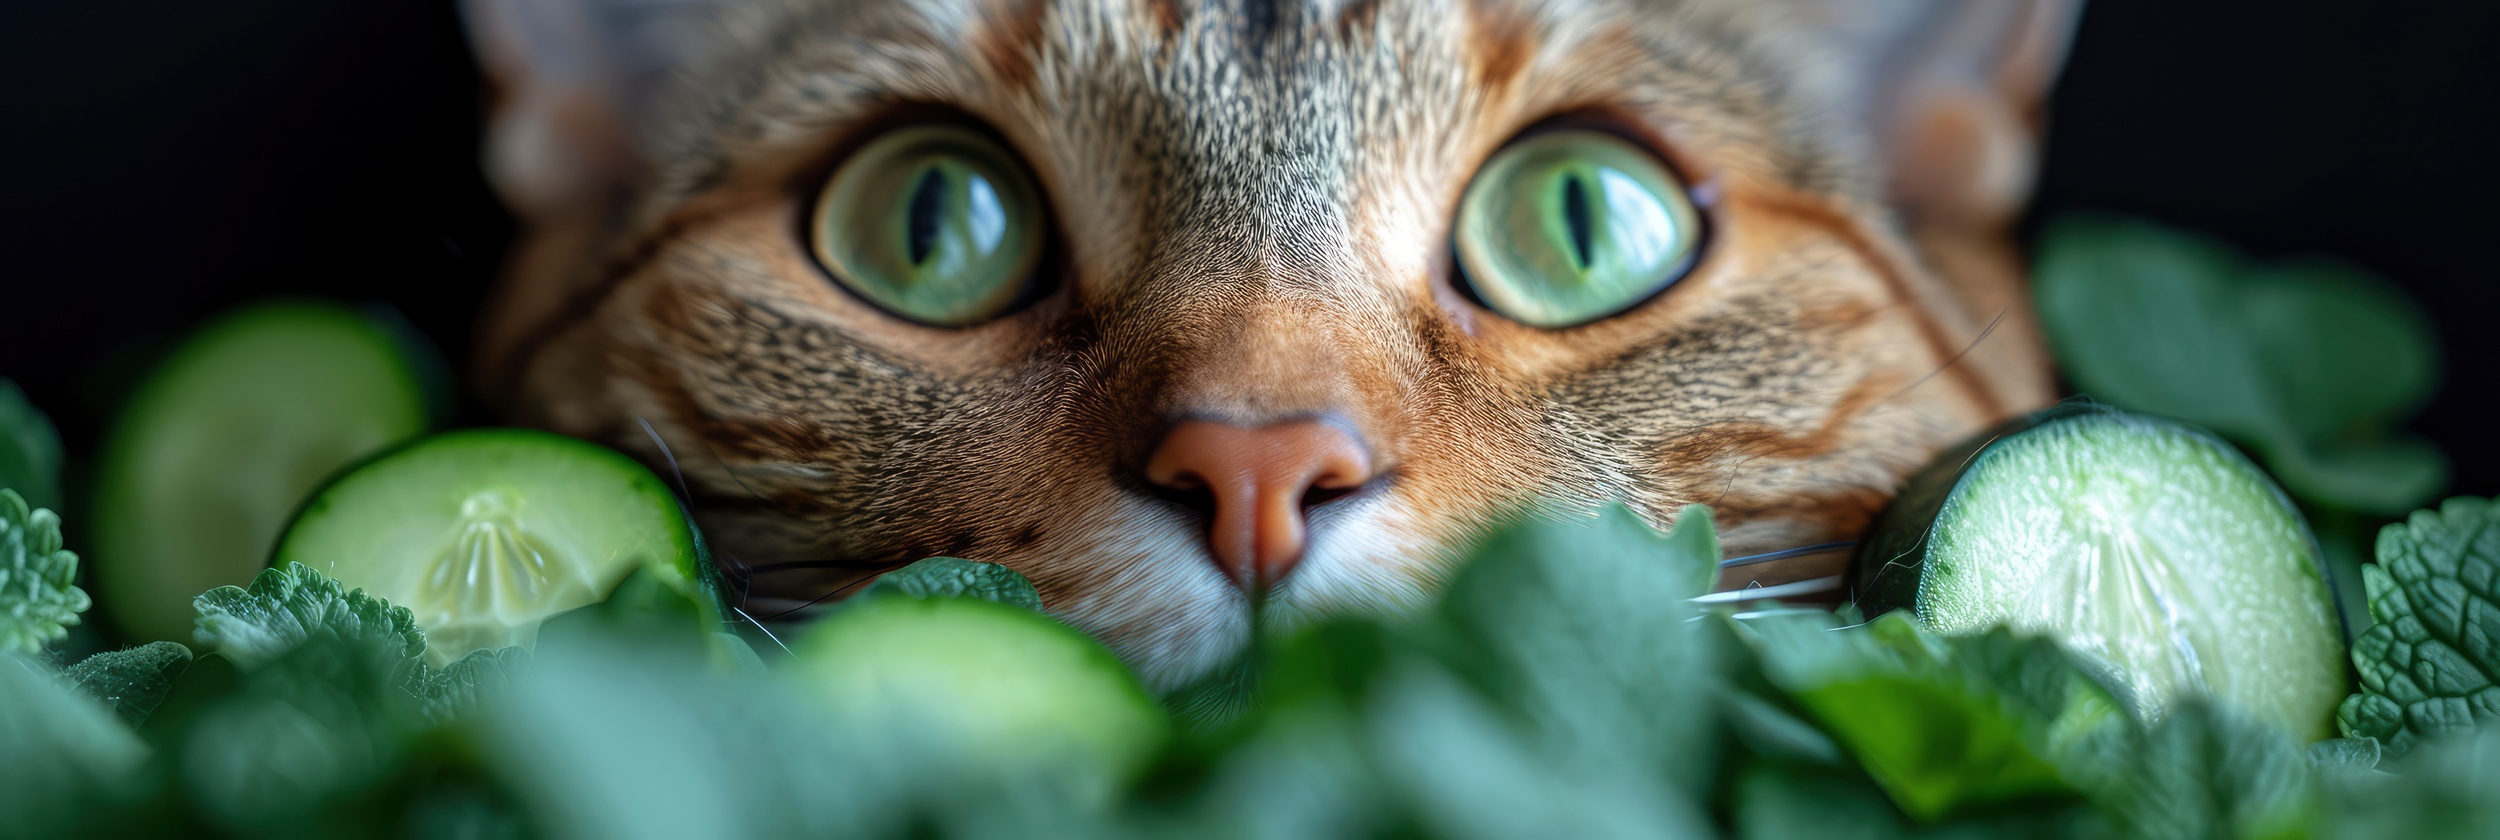 Surprendre son chat peut avoir des conséquences sérieuses sur sa santé, peu importe la nature de l'objet que vous utilisez. © PicTCoral, Adobe Stock